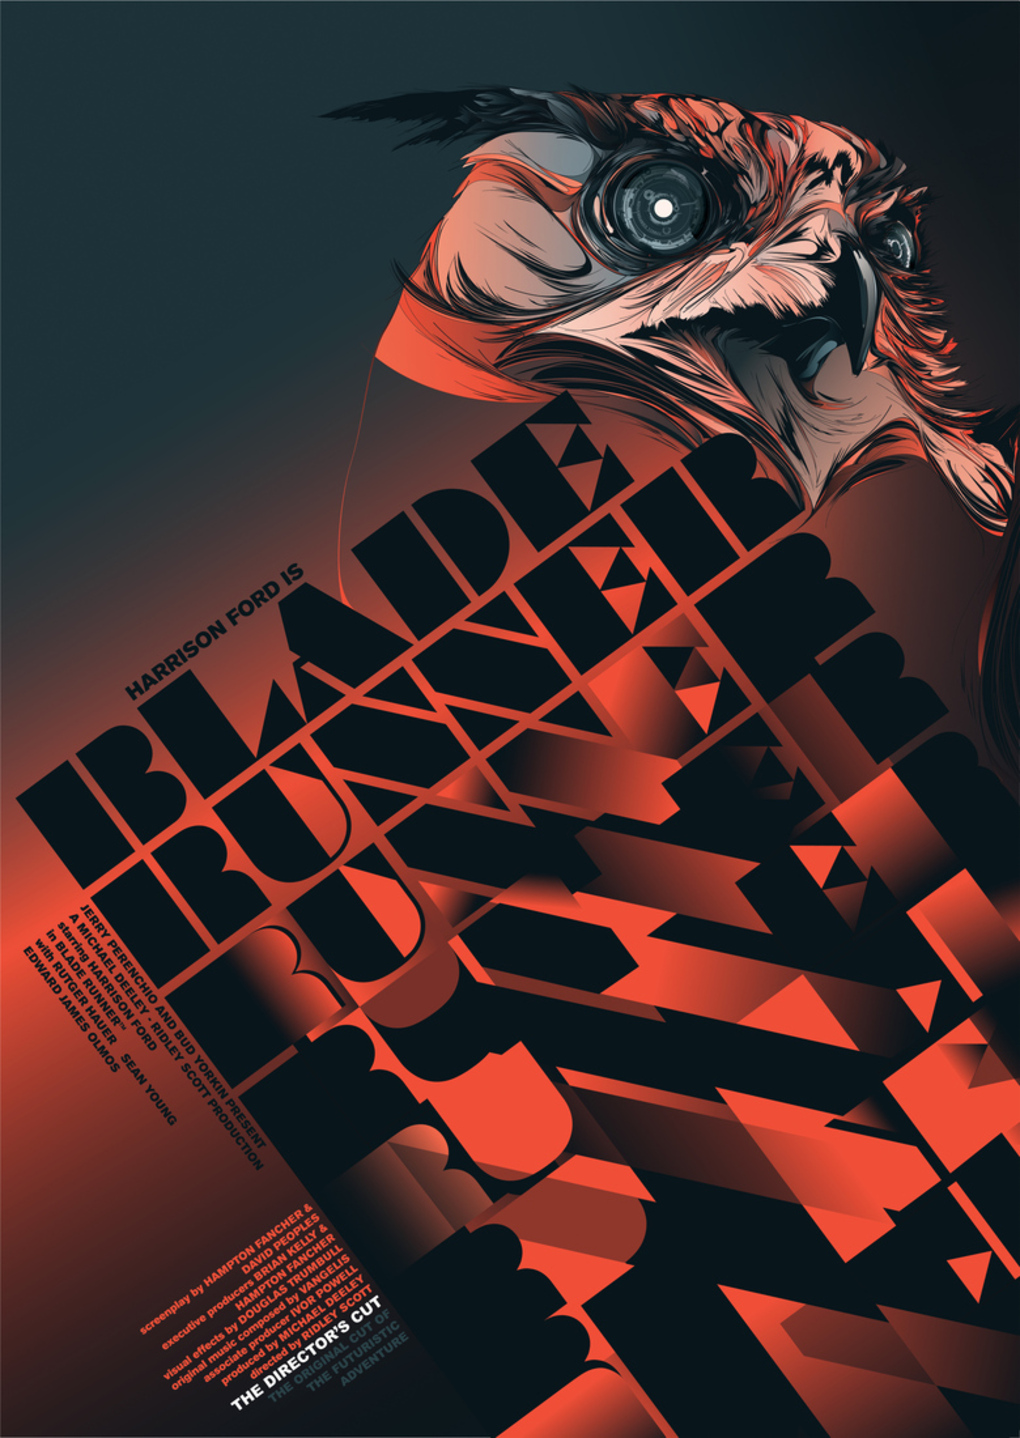 Alternative Movie Posters: Film Art from the Underground: Blade Runner